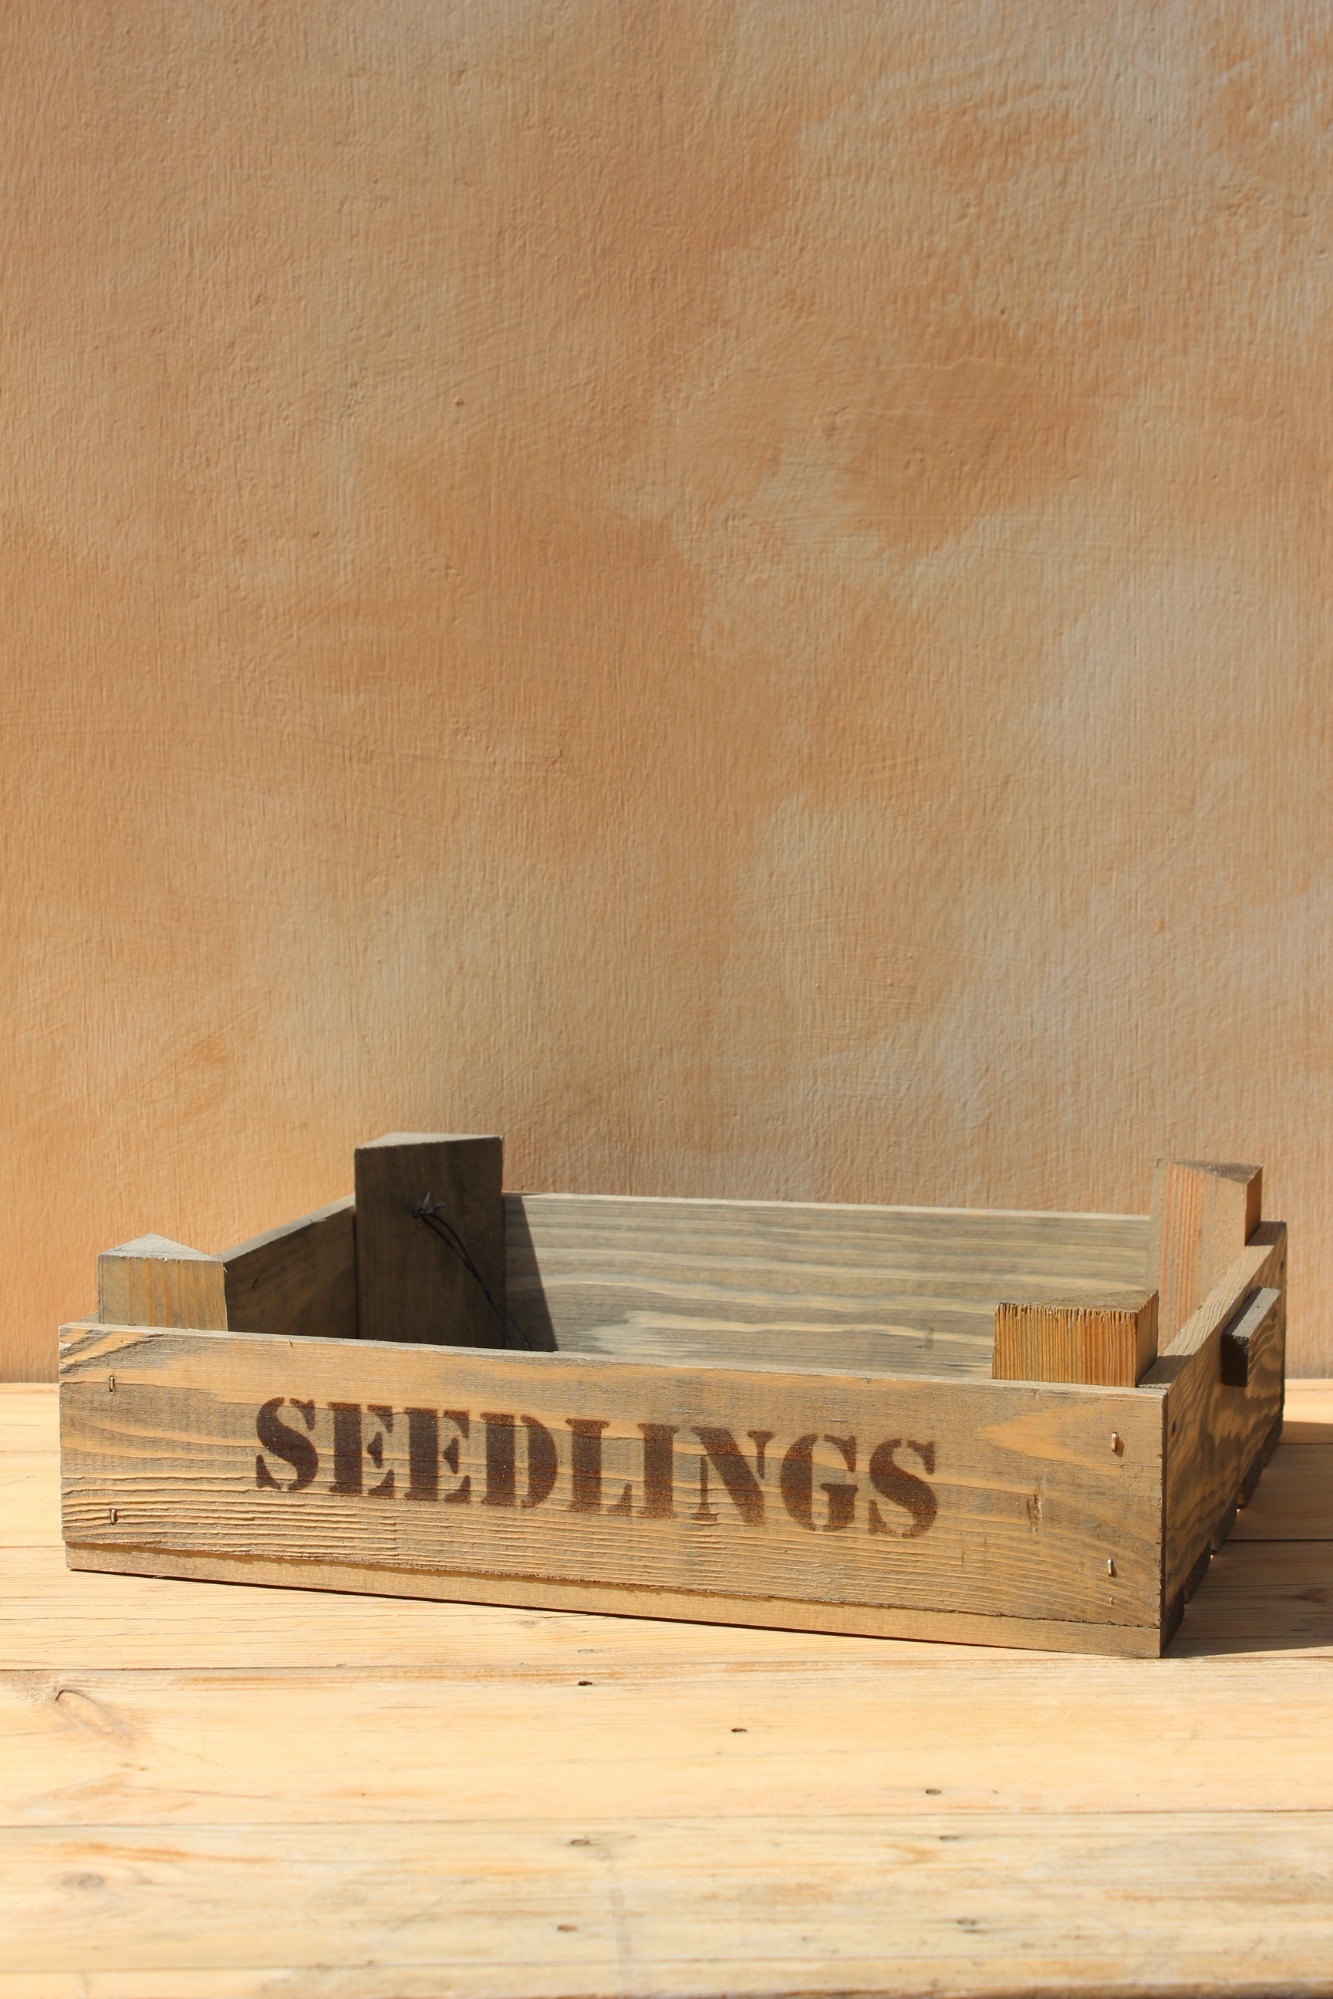 Seedlings Tray